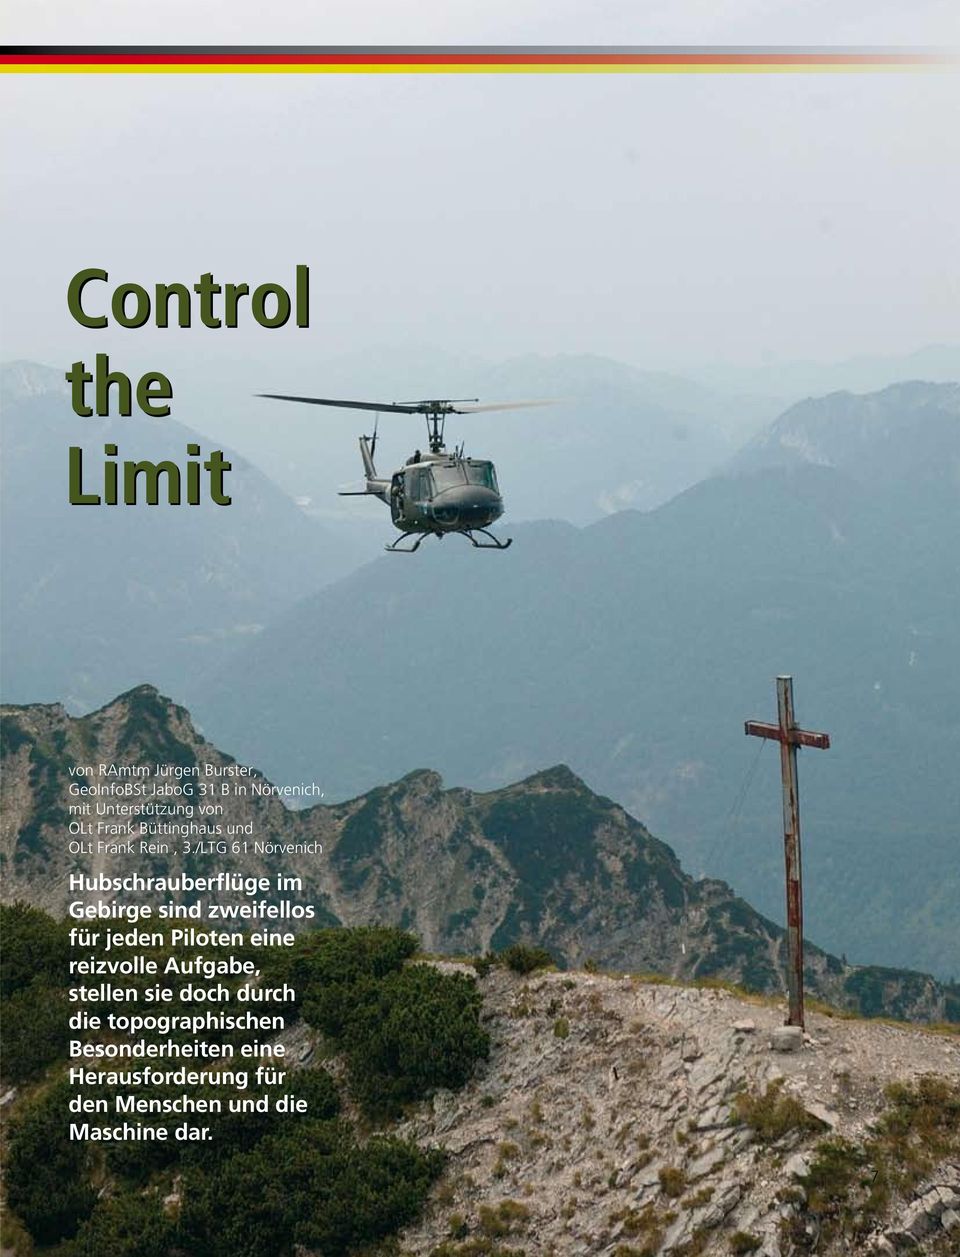 /LTG 61 Nörvenich Hubschrauberflüge im Gebirge sind zweifellos für jeden Piloten eine